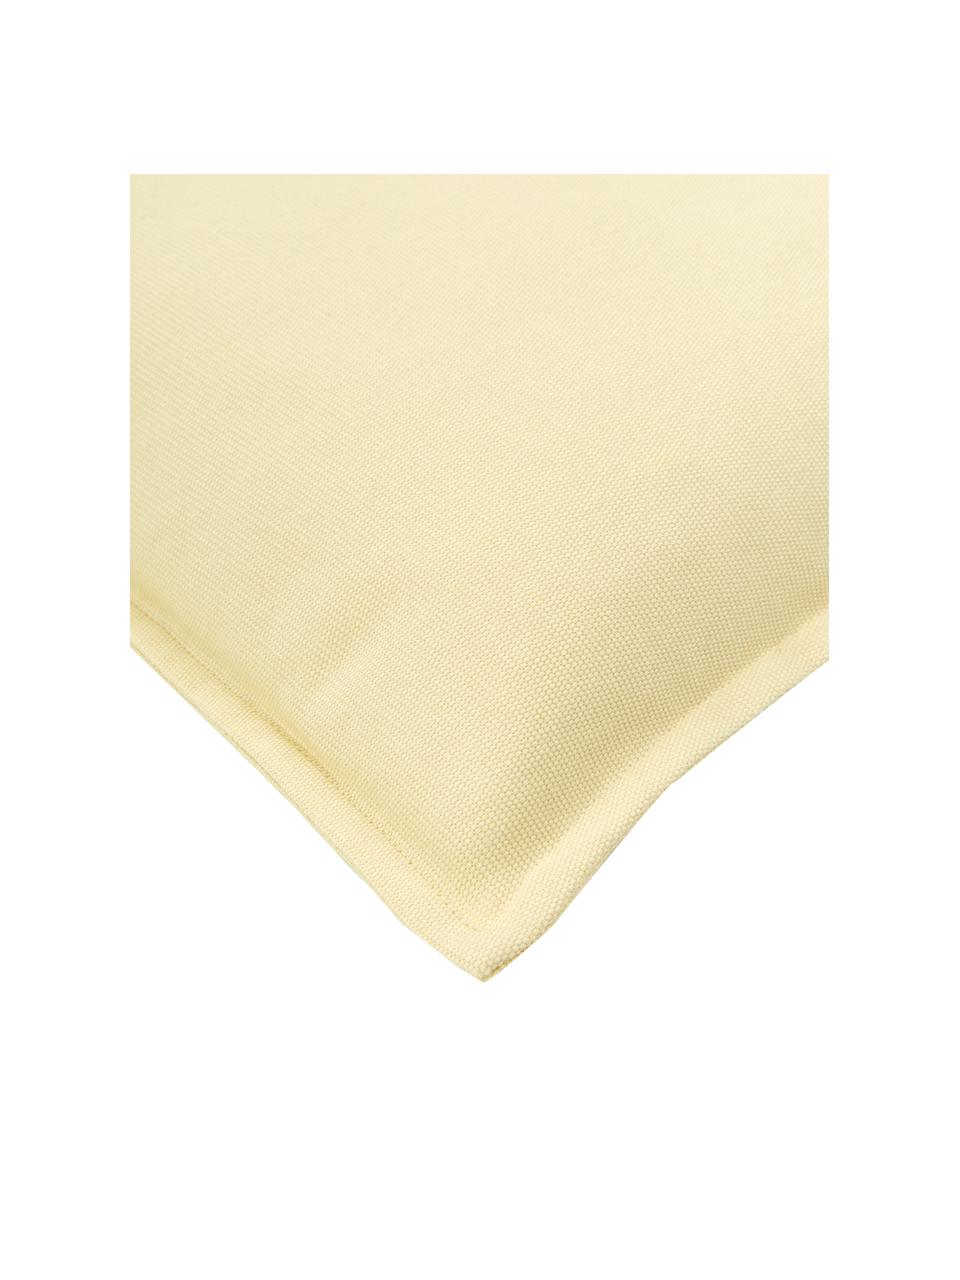 Housse de coussin en coton jaune clair Mads, 100 % coton, Jaune, larg. 40 x long. 40 cm